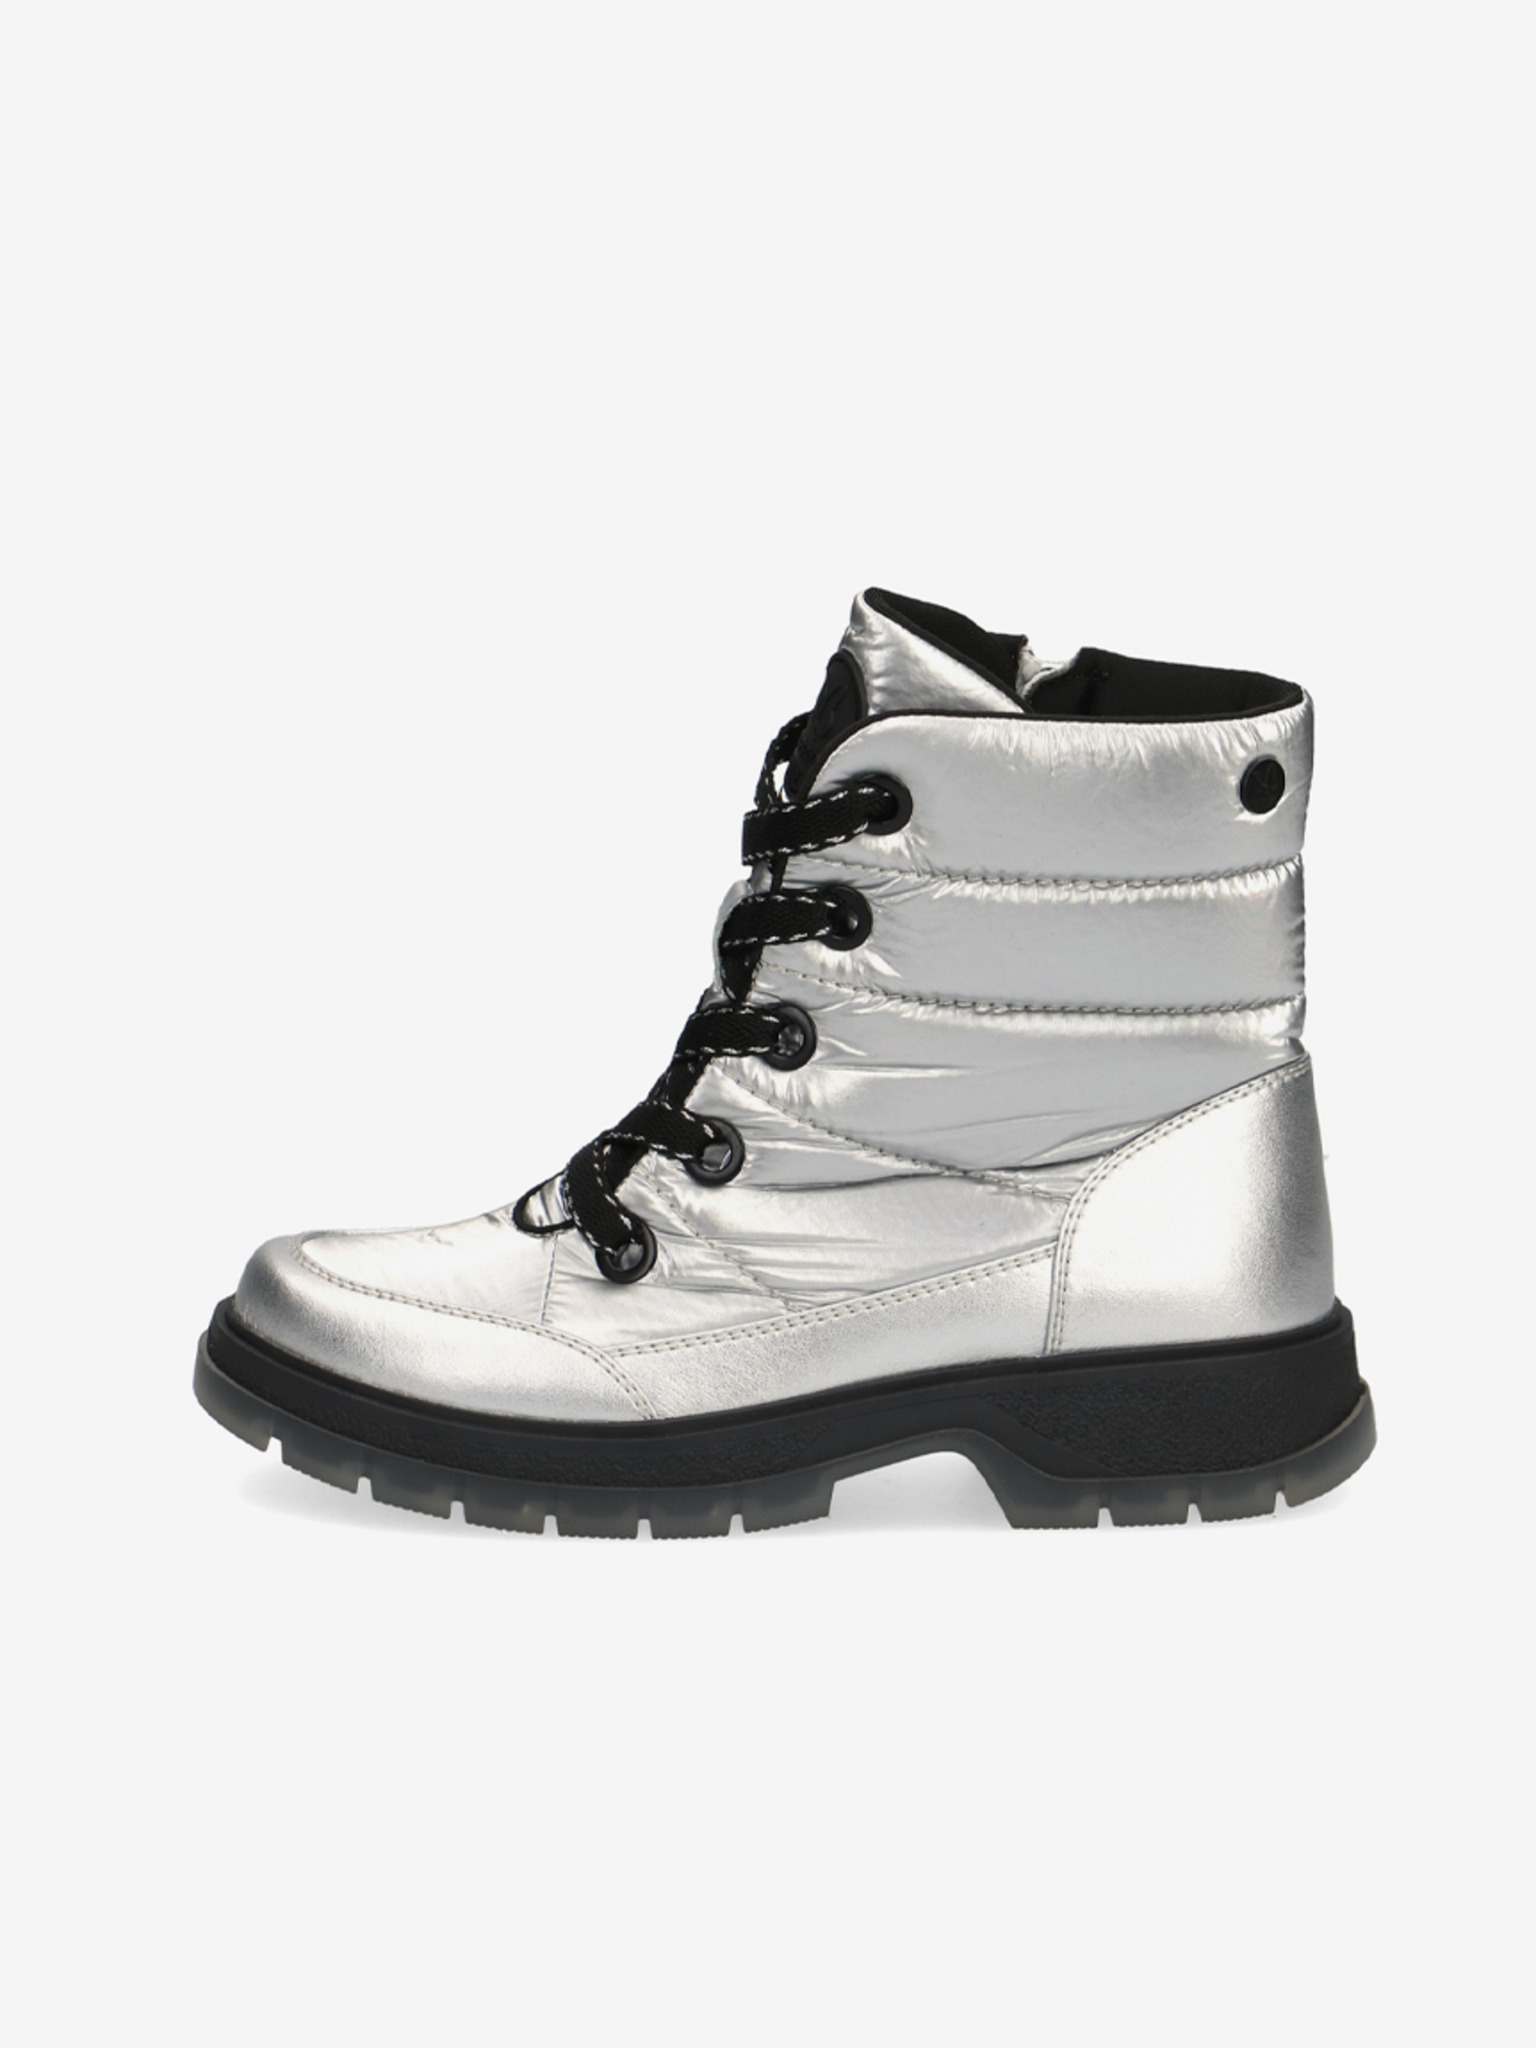 Fotografie Dámské kotníkové zimní boty ve stříbrné barvě Caprice - 39